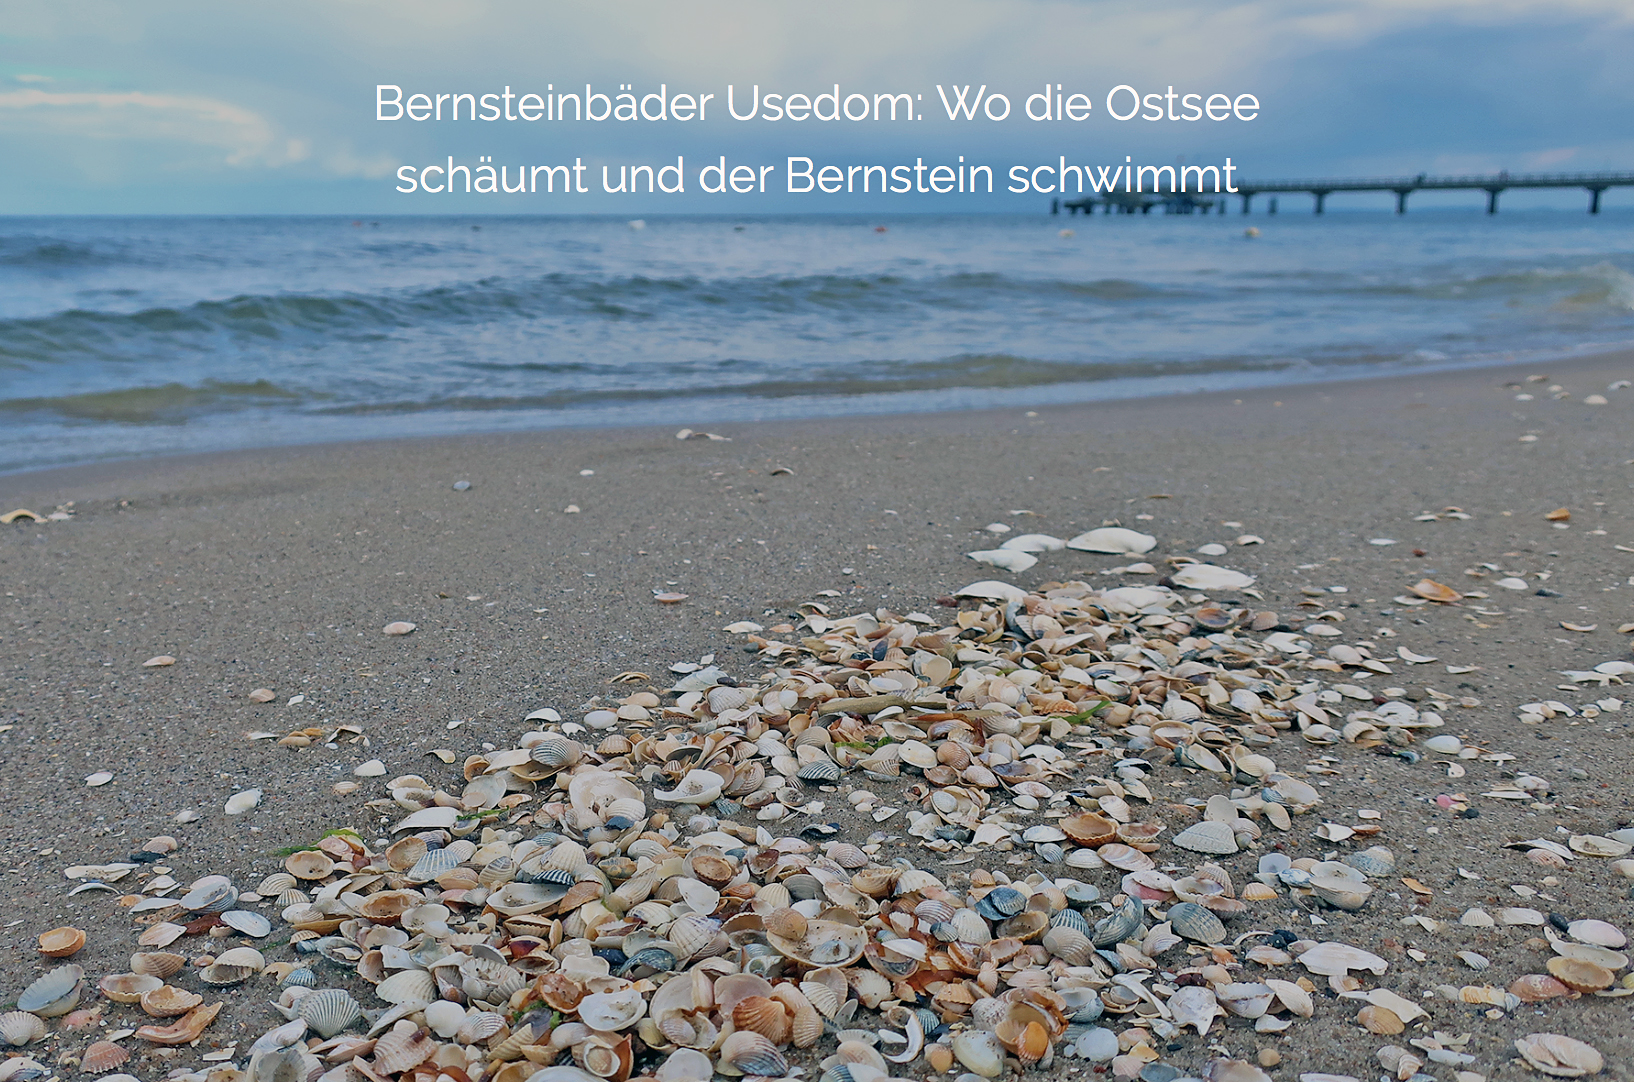 Reisevideo & Interview: Dem Bernstein auf der Ostseeinsel Usedom auf der Spur